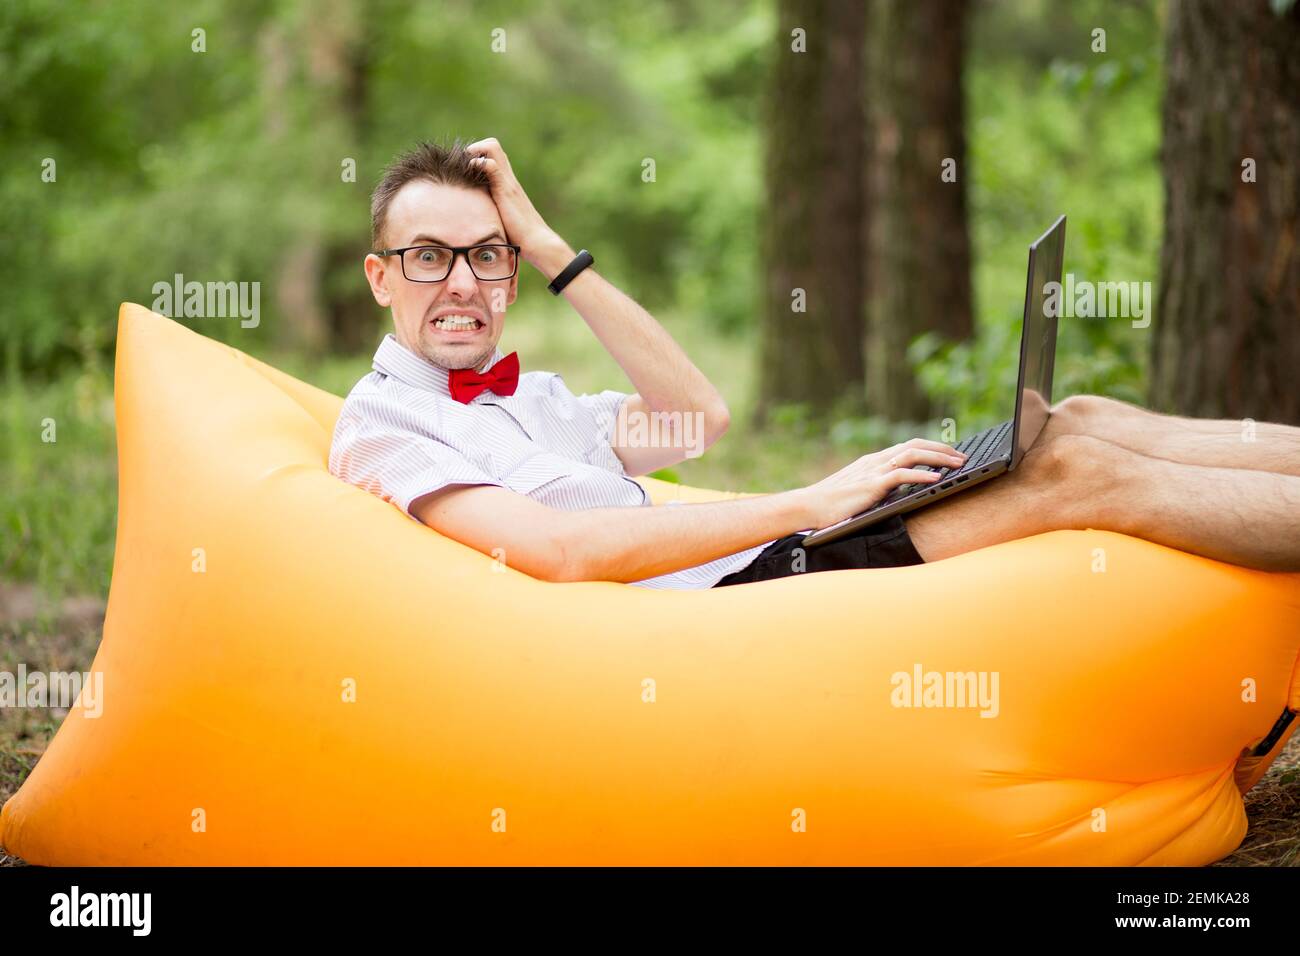 Un étudiant effrayé dans des lunettes avec ordinateur portable allongé sur un matelas gonflable à l'extérieur dans le parc d'été. Éducation, affaires, échec et concept technologique Banque D'Images